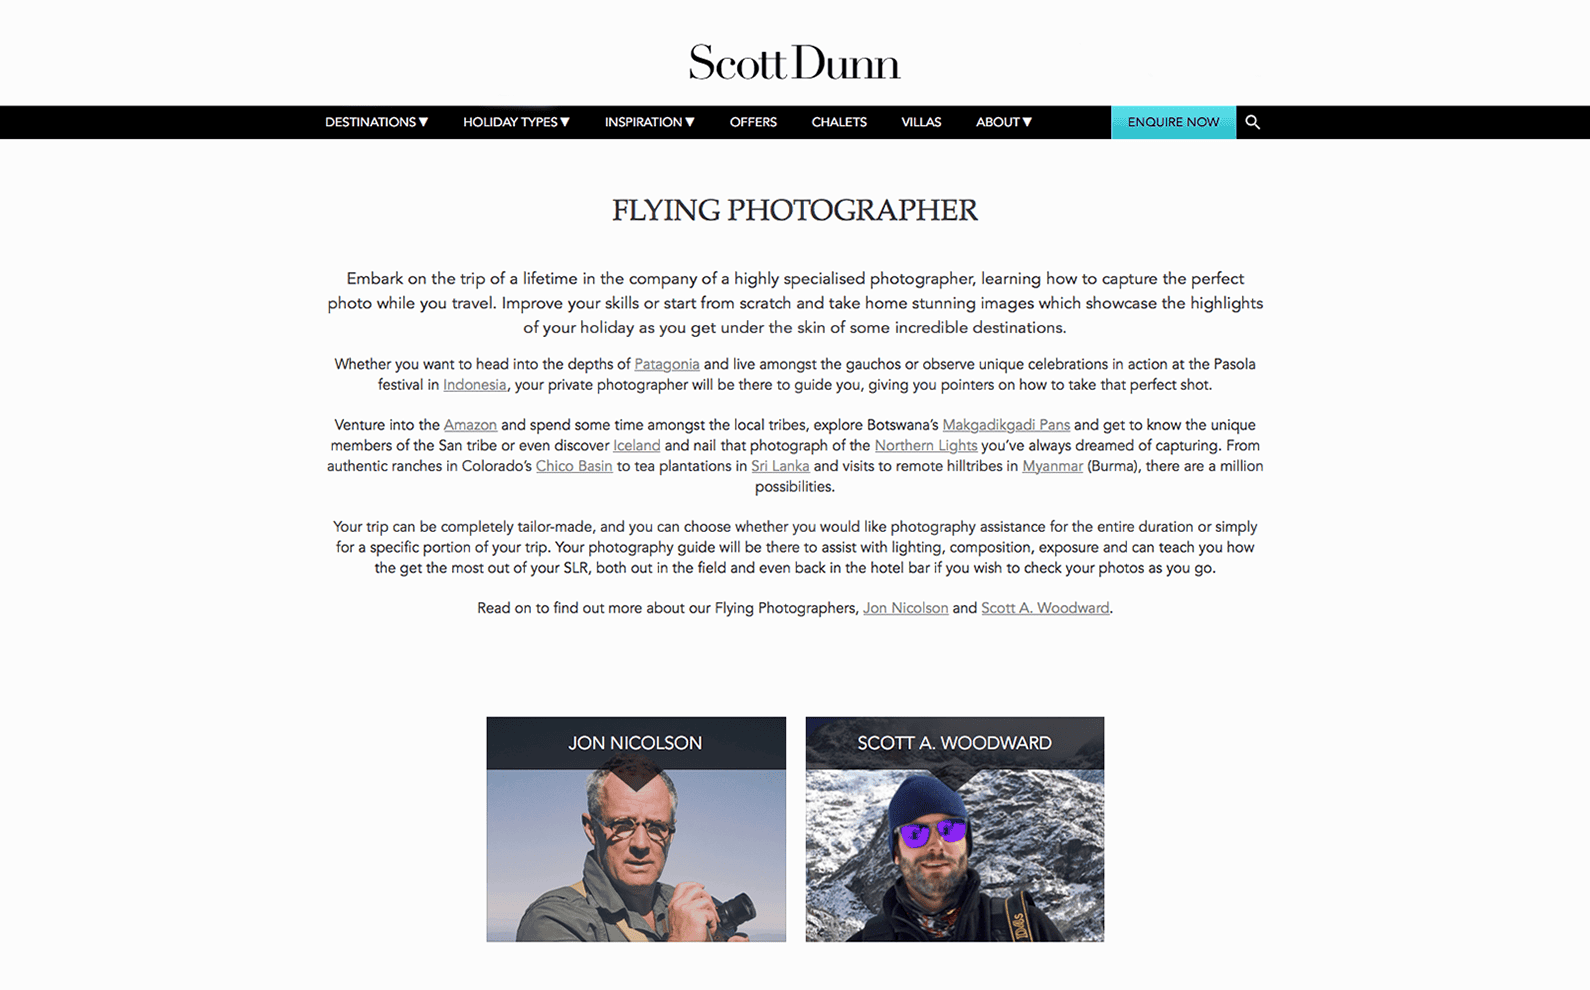 SCOTT DUNN - Flying Photographer 01